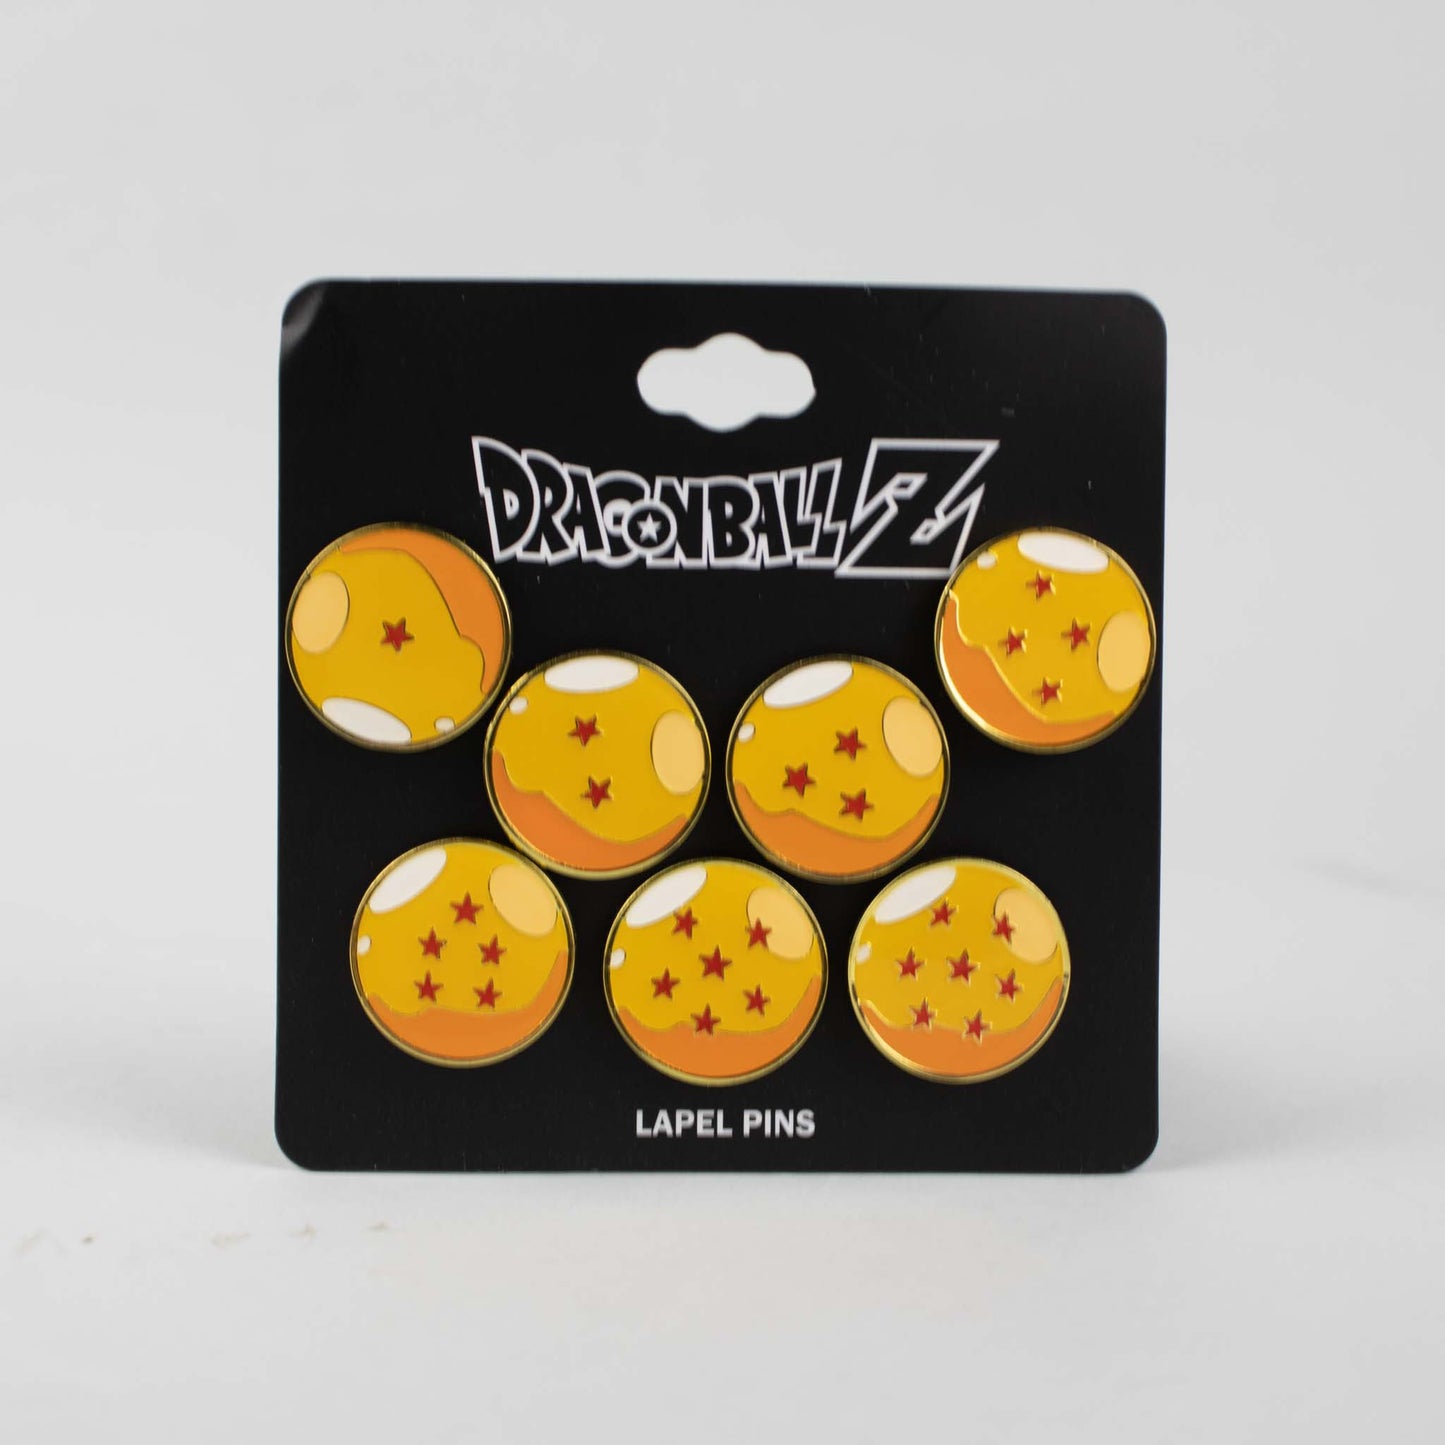 The Seven Dragon Balls (Dragon Ball Z) Set of 7 Enamel Pins